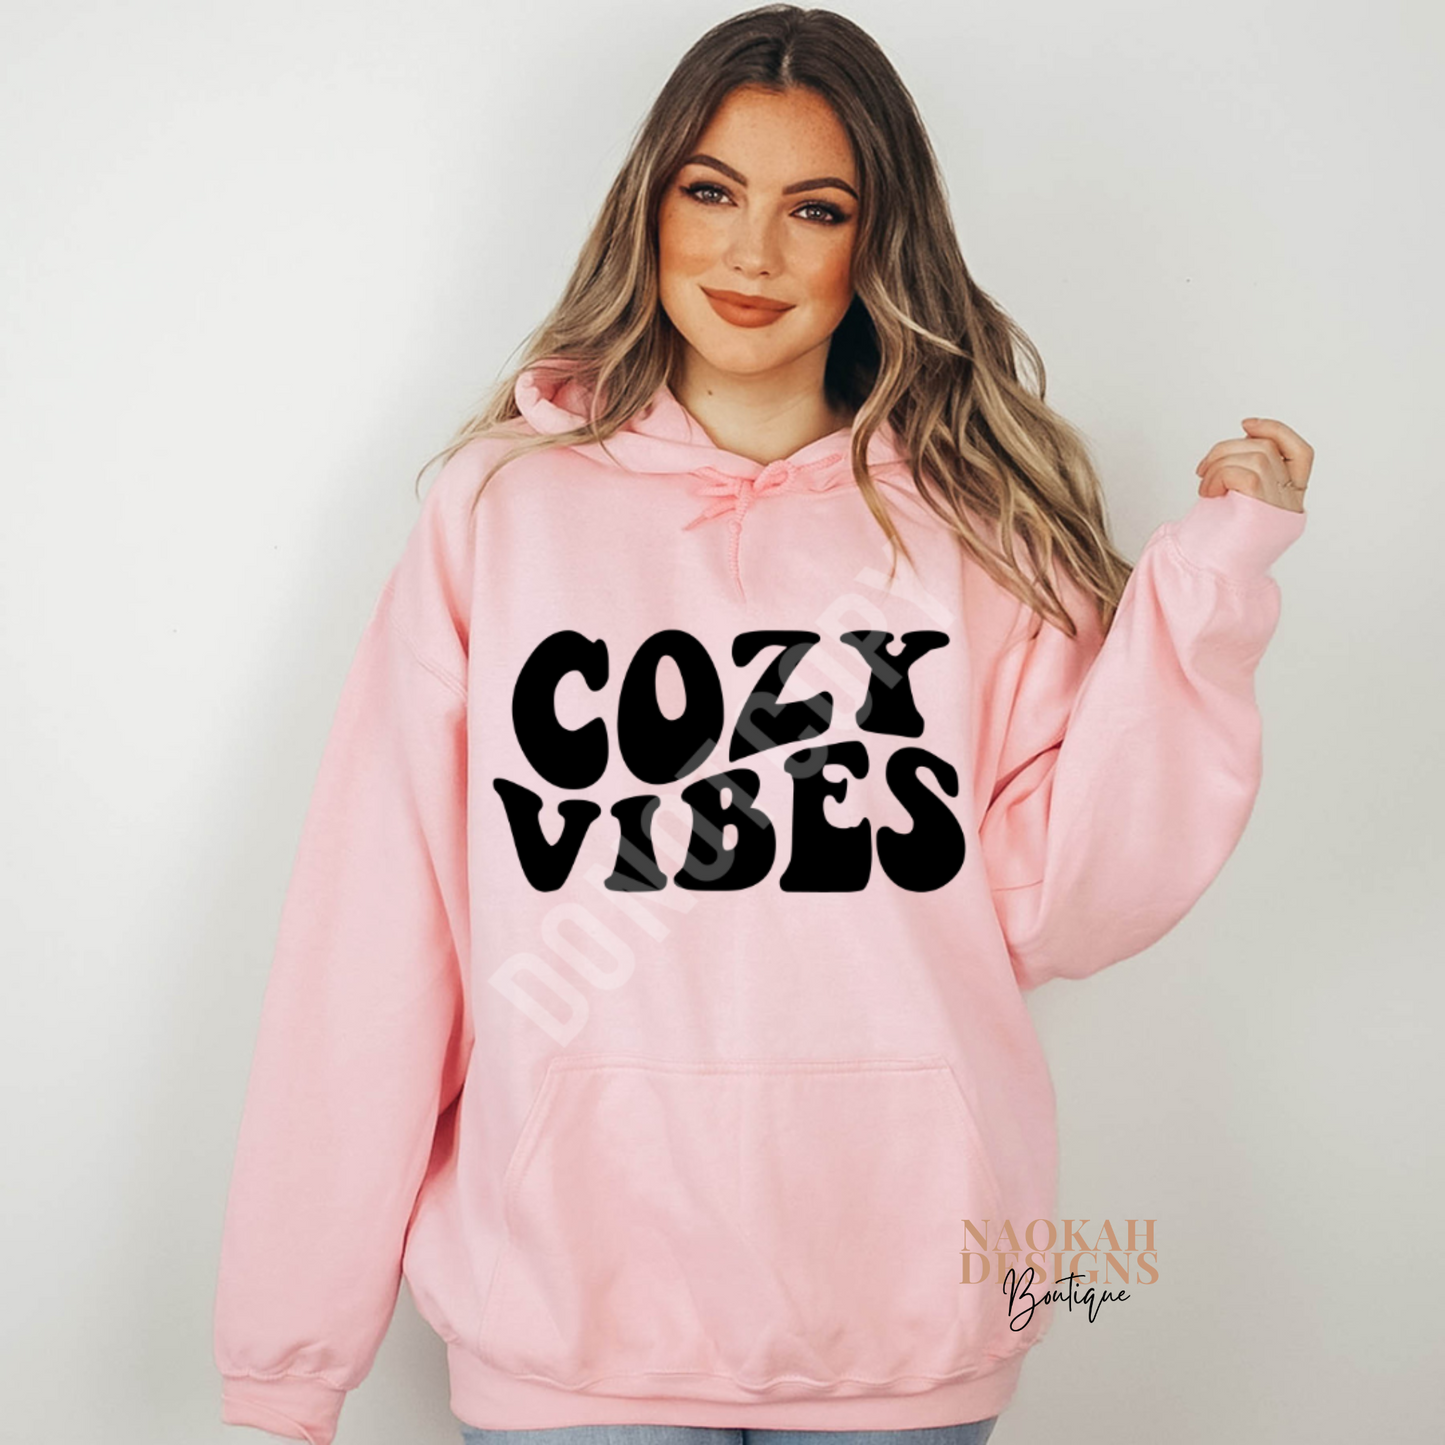 Cozy Vibes Crewneck Sweatshirt, Cozy sweatshirt, cozy vibes sweatshirt, vibes sweatshirt, fall sweatshirt, cozy fall sweatshirt, hello fall sweatshirt, cozy